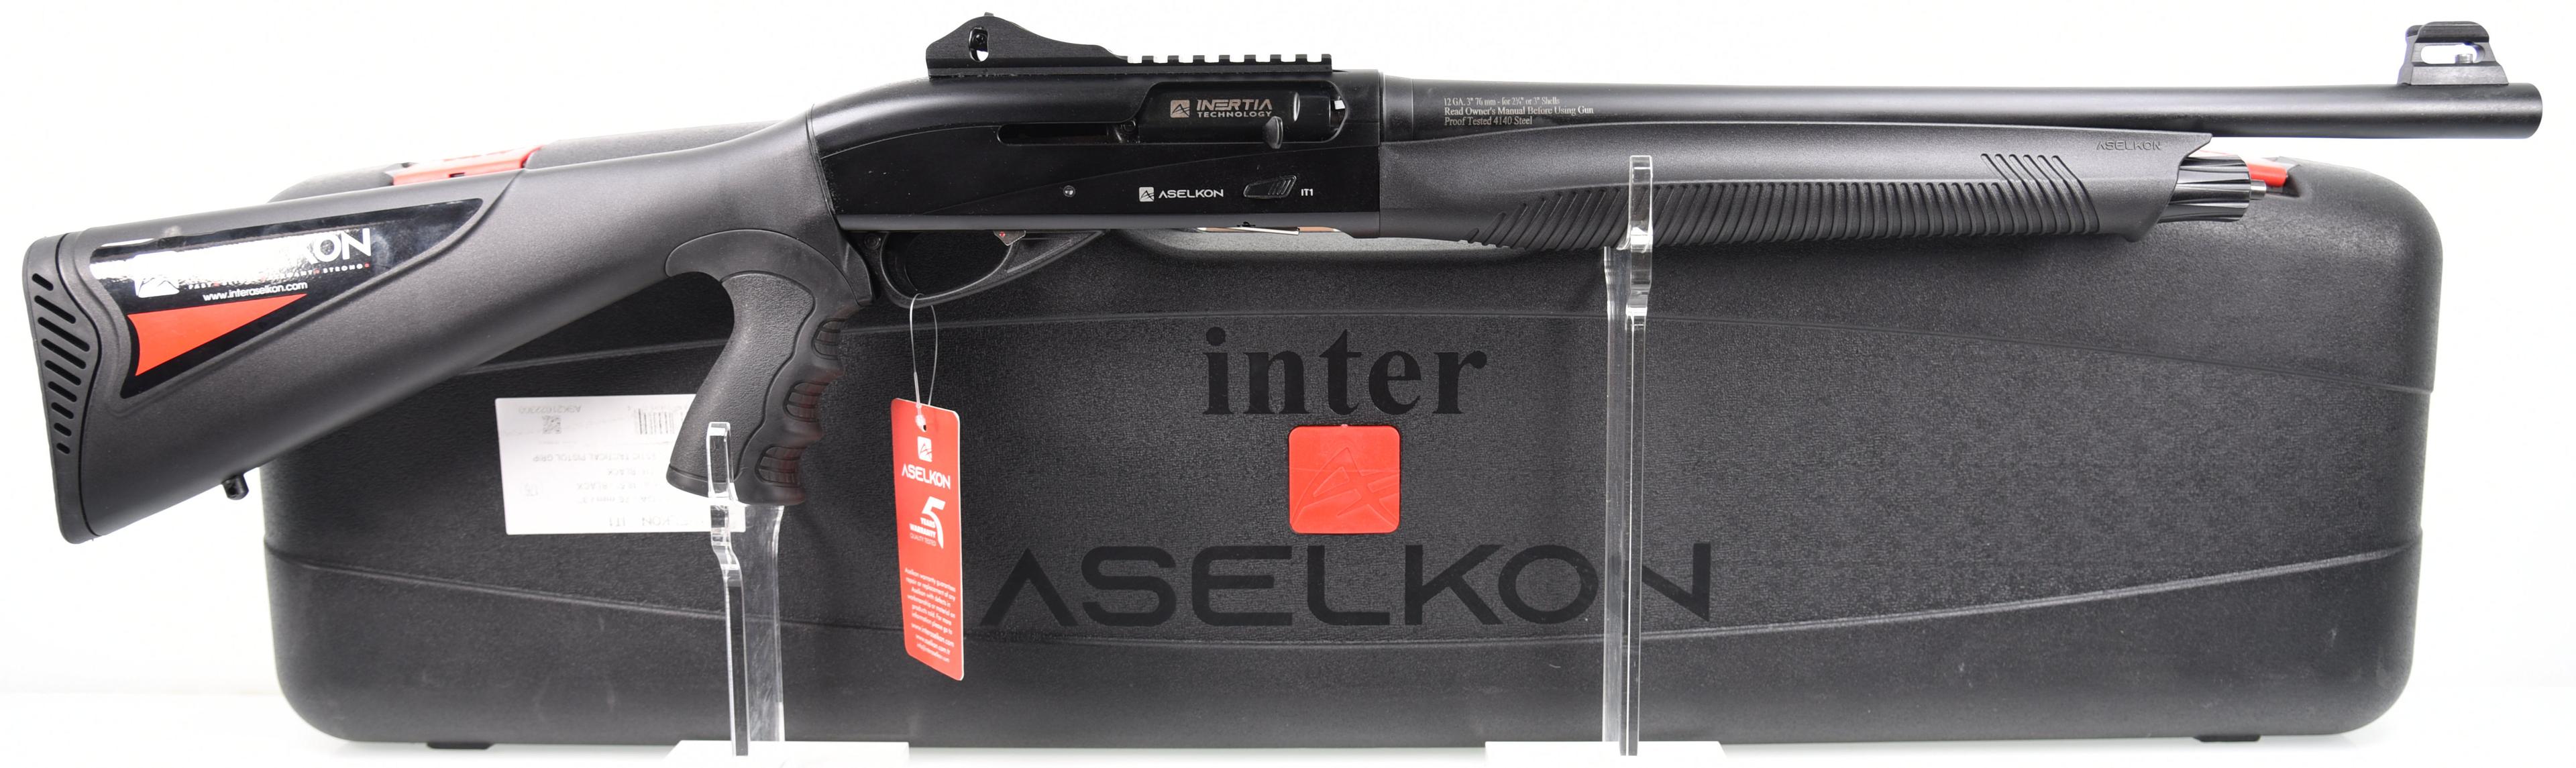 ASELKON/IMP BY ADCO CIA IT-1 Semi Auto Shotgun